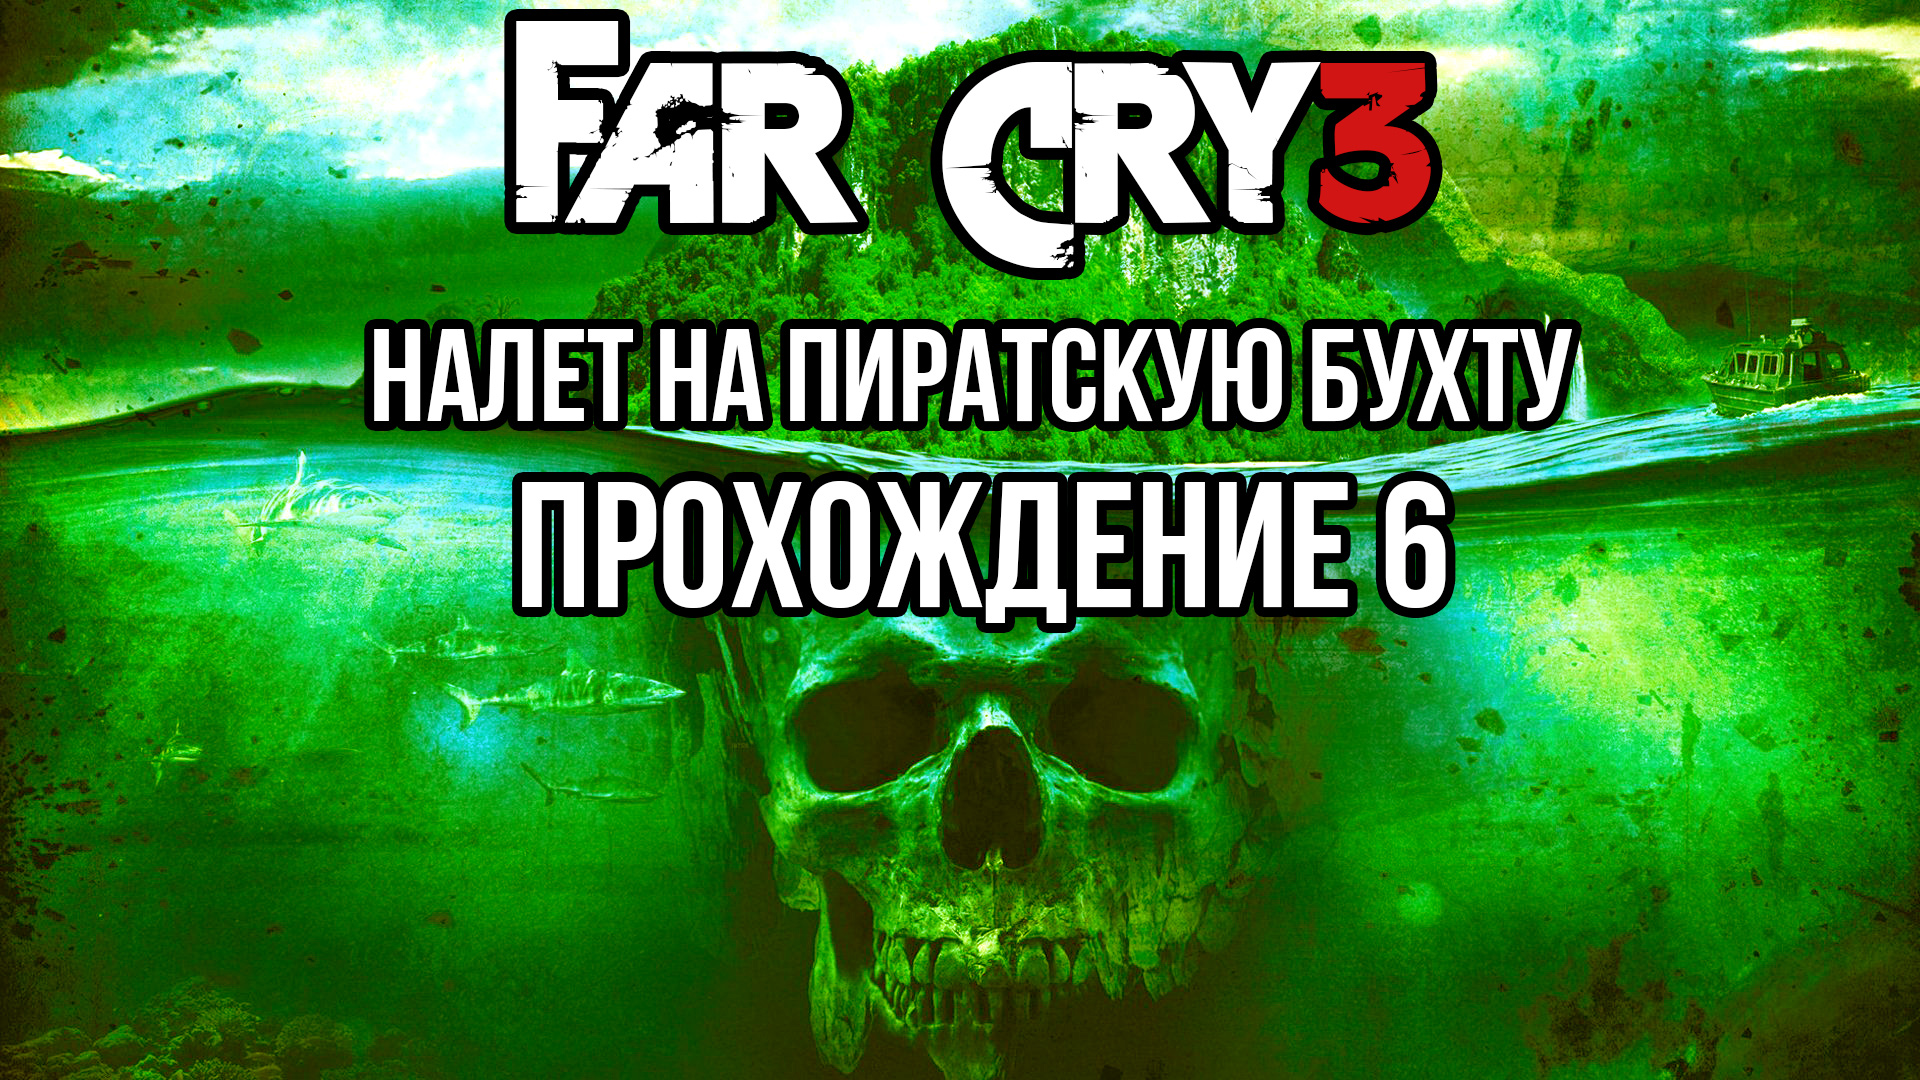 Far cry 3 - Налет на пиратскую бухту. Прохождение #6